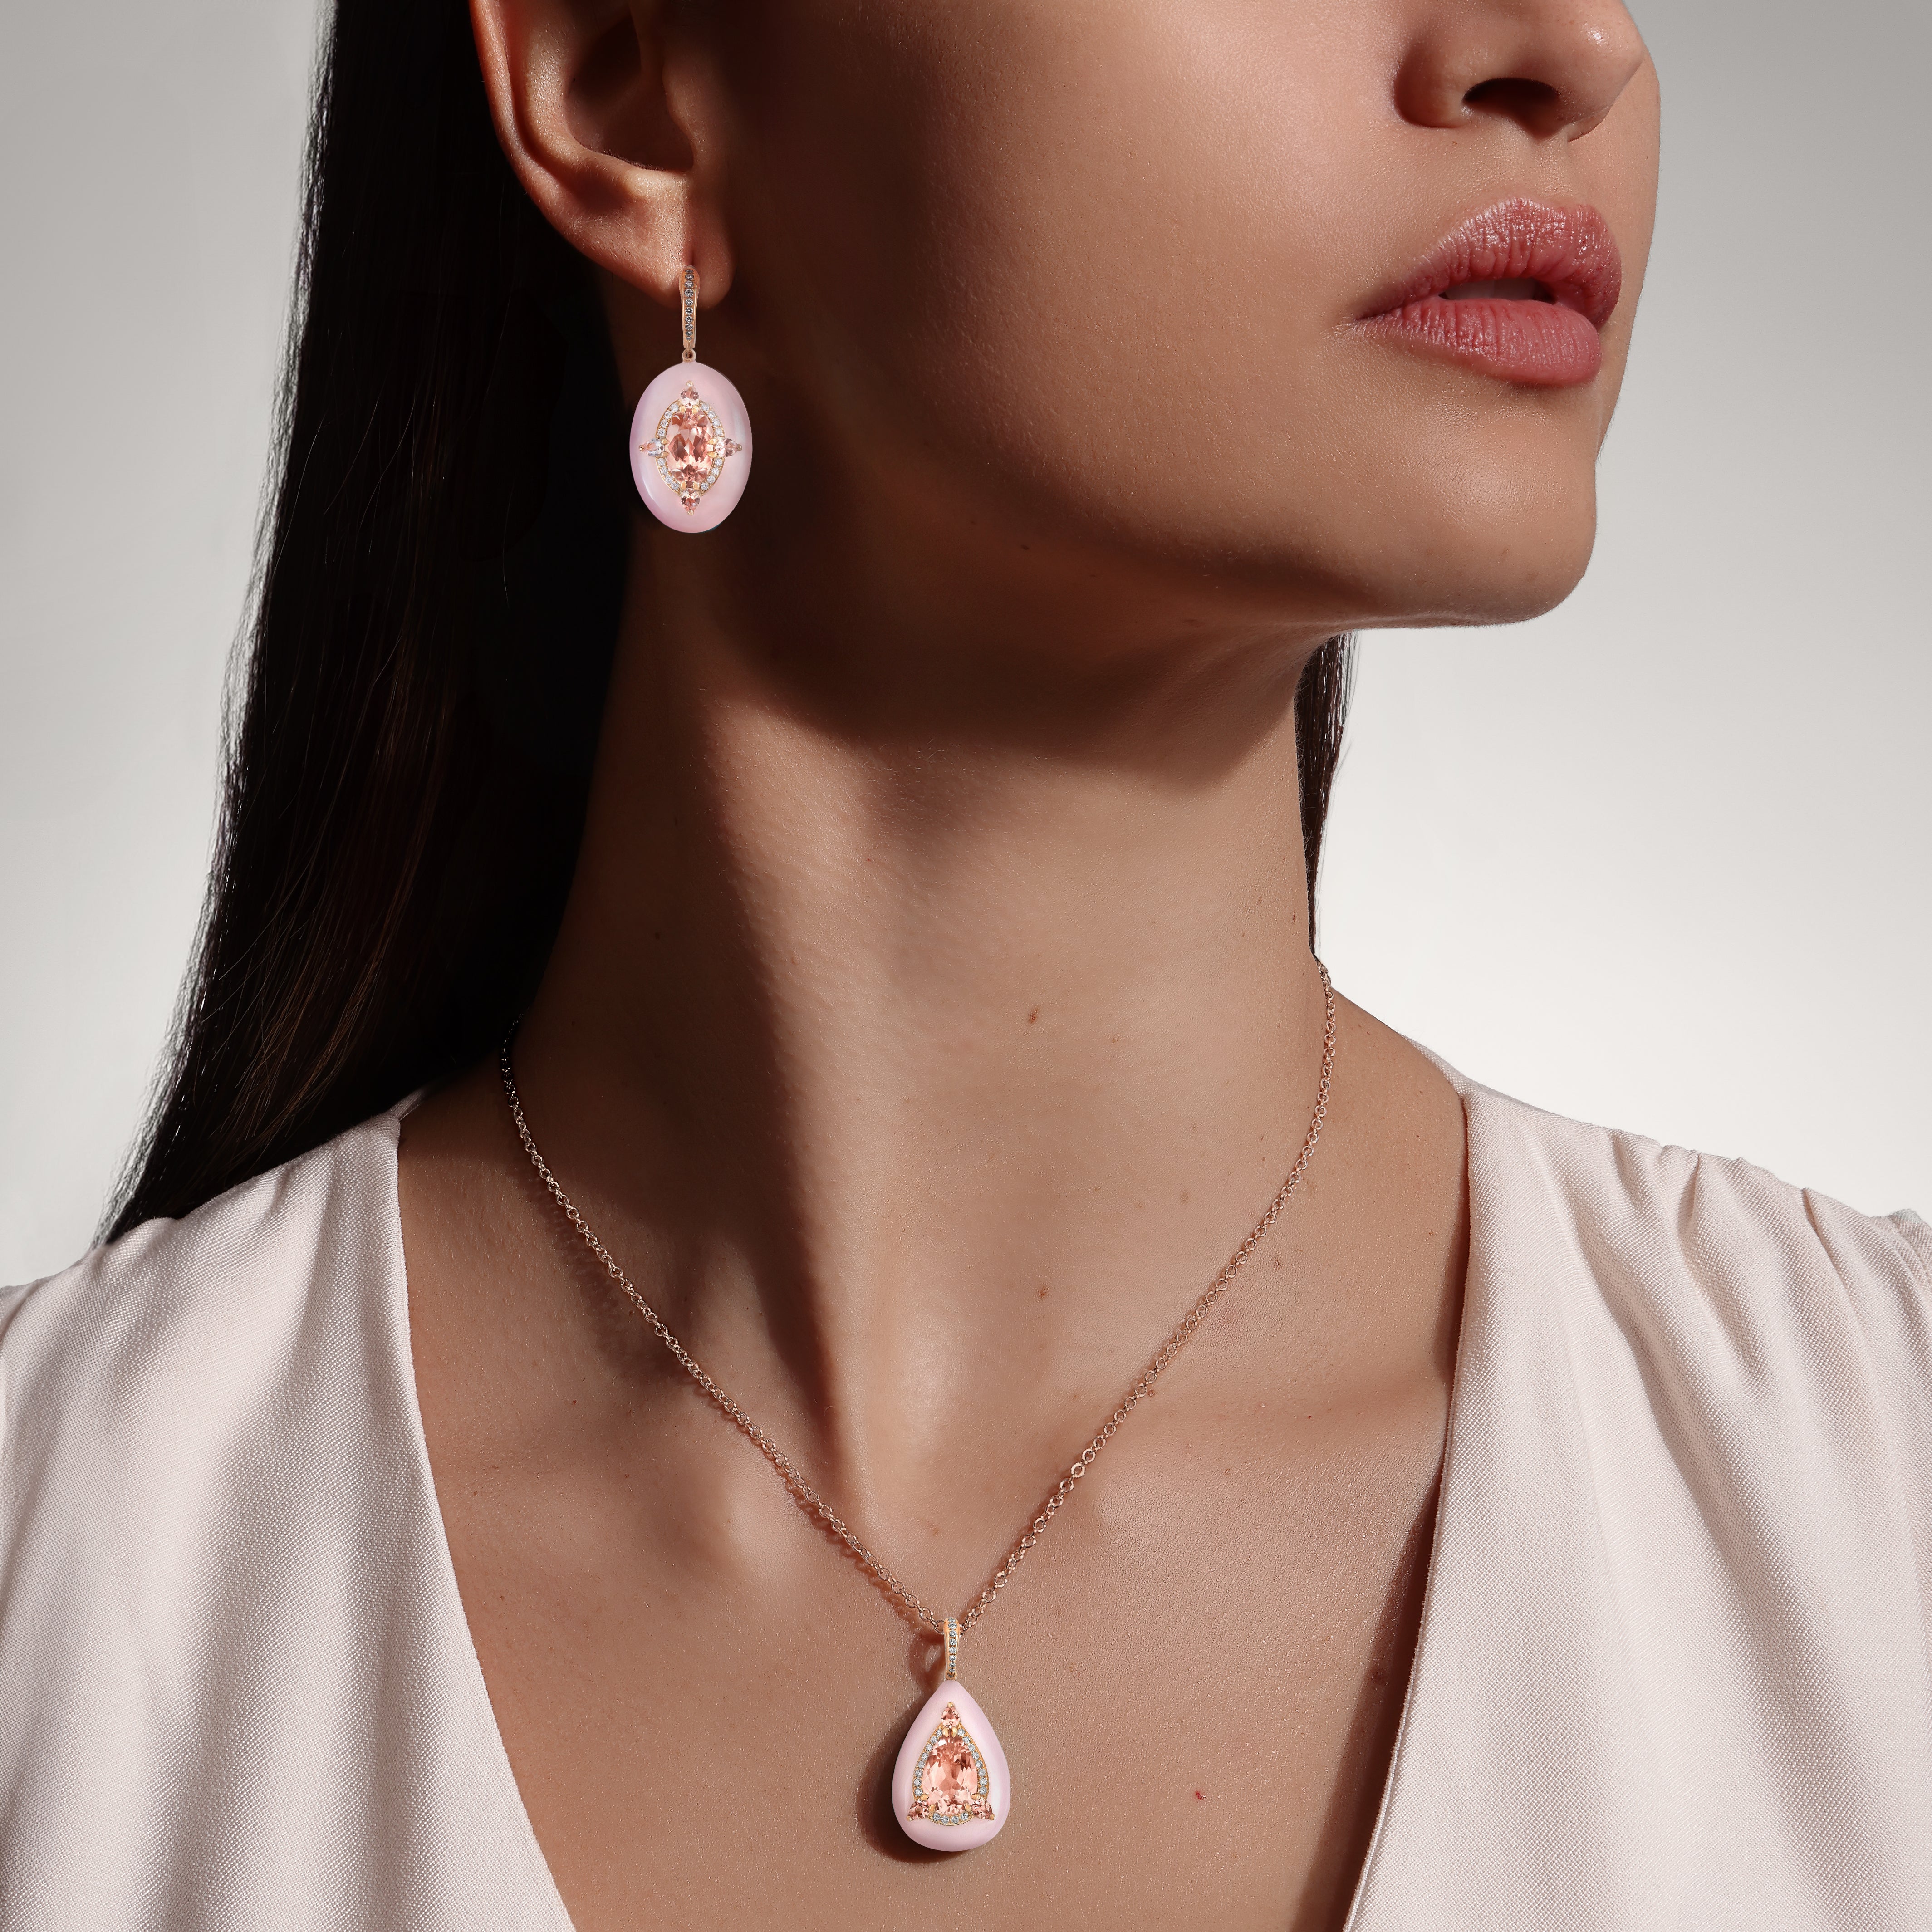 Reveal - Morganite and Pink Opal Earrings